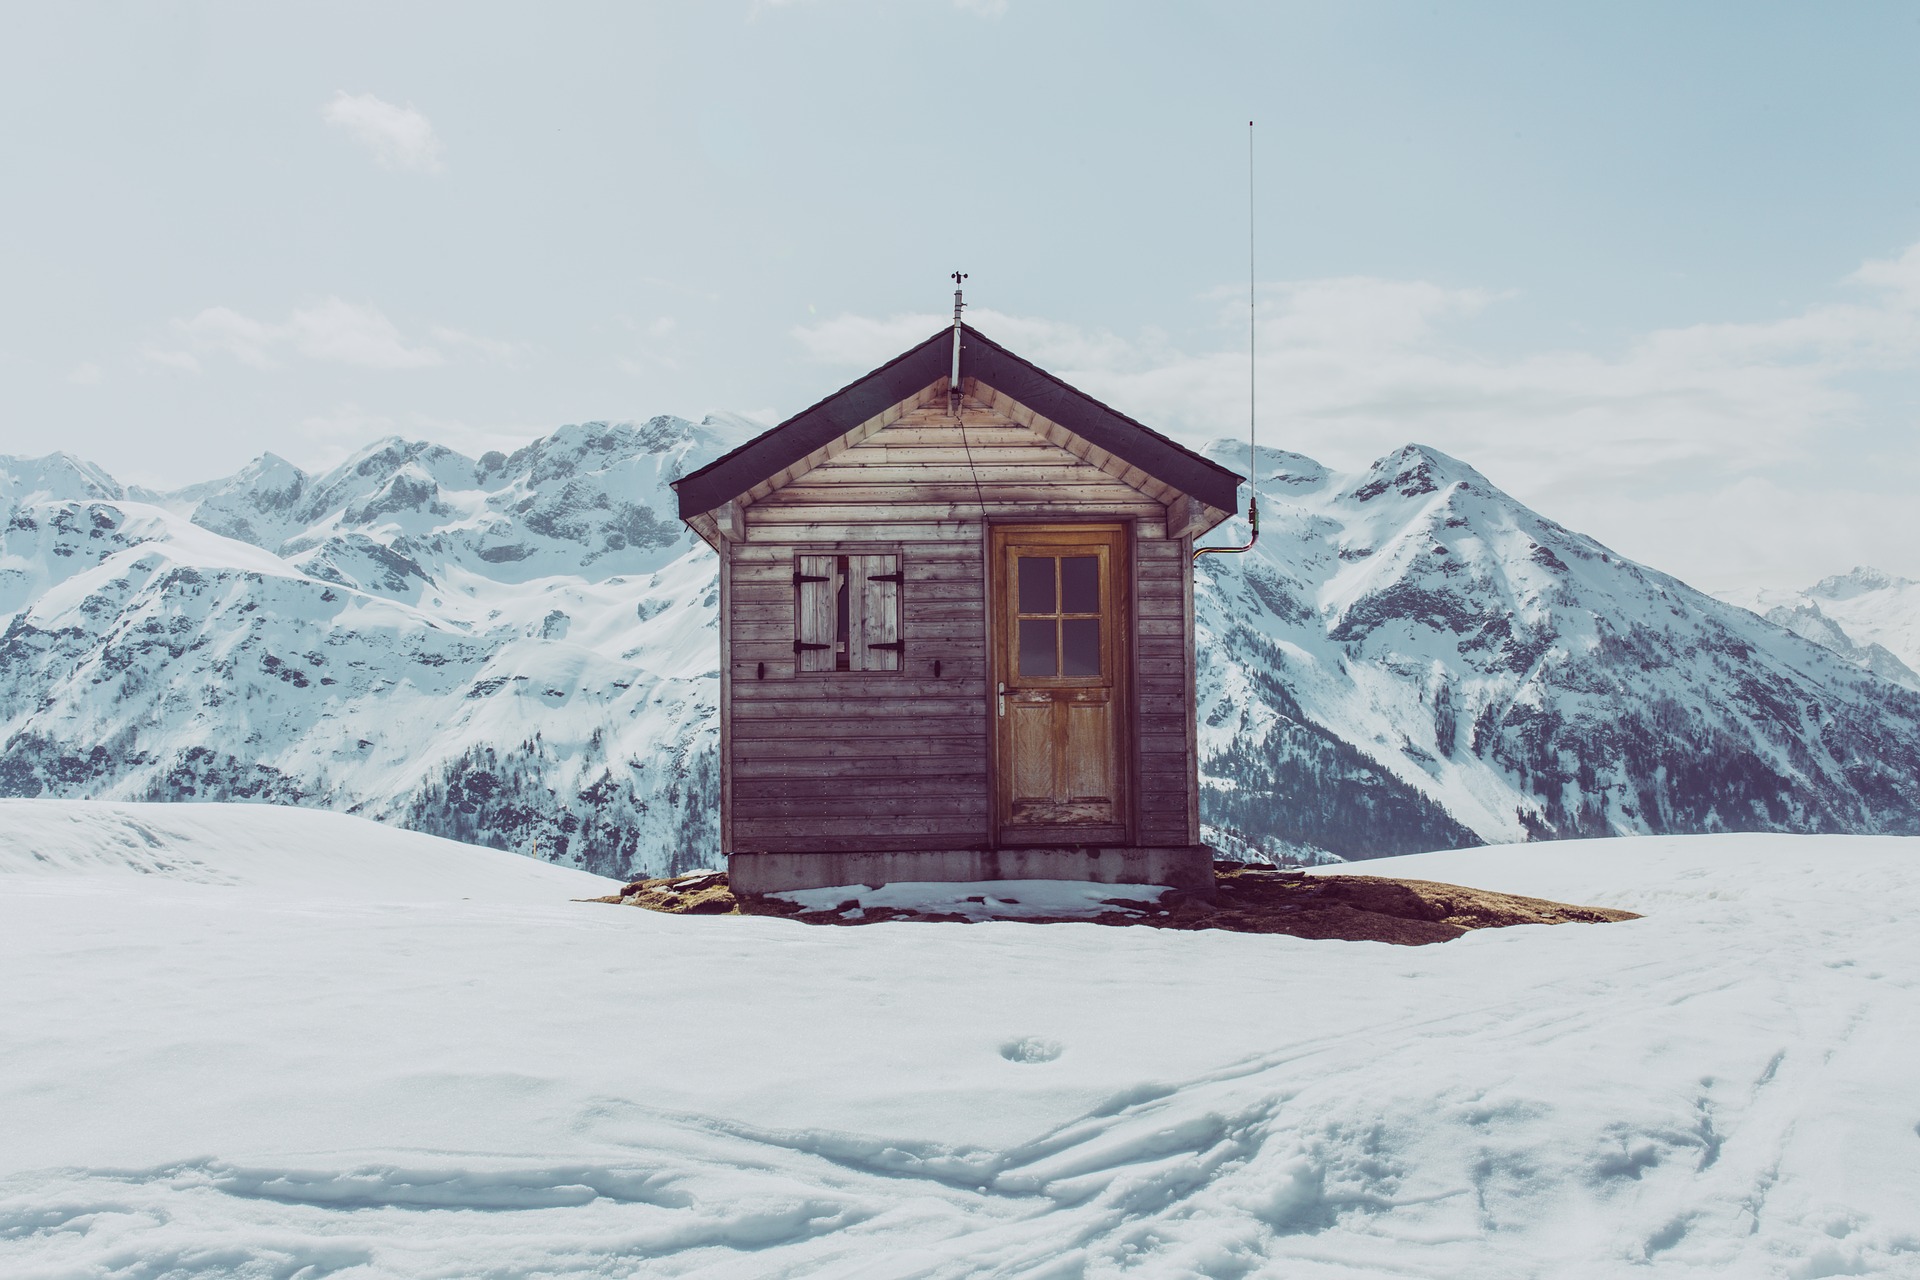 Une semaine de vacances au ski - @Pexels - Pixabay